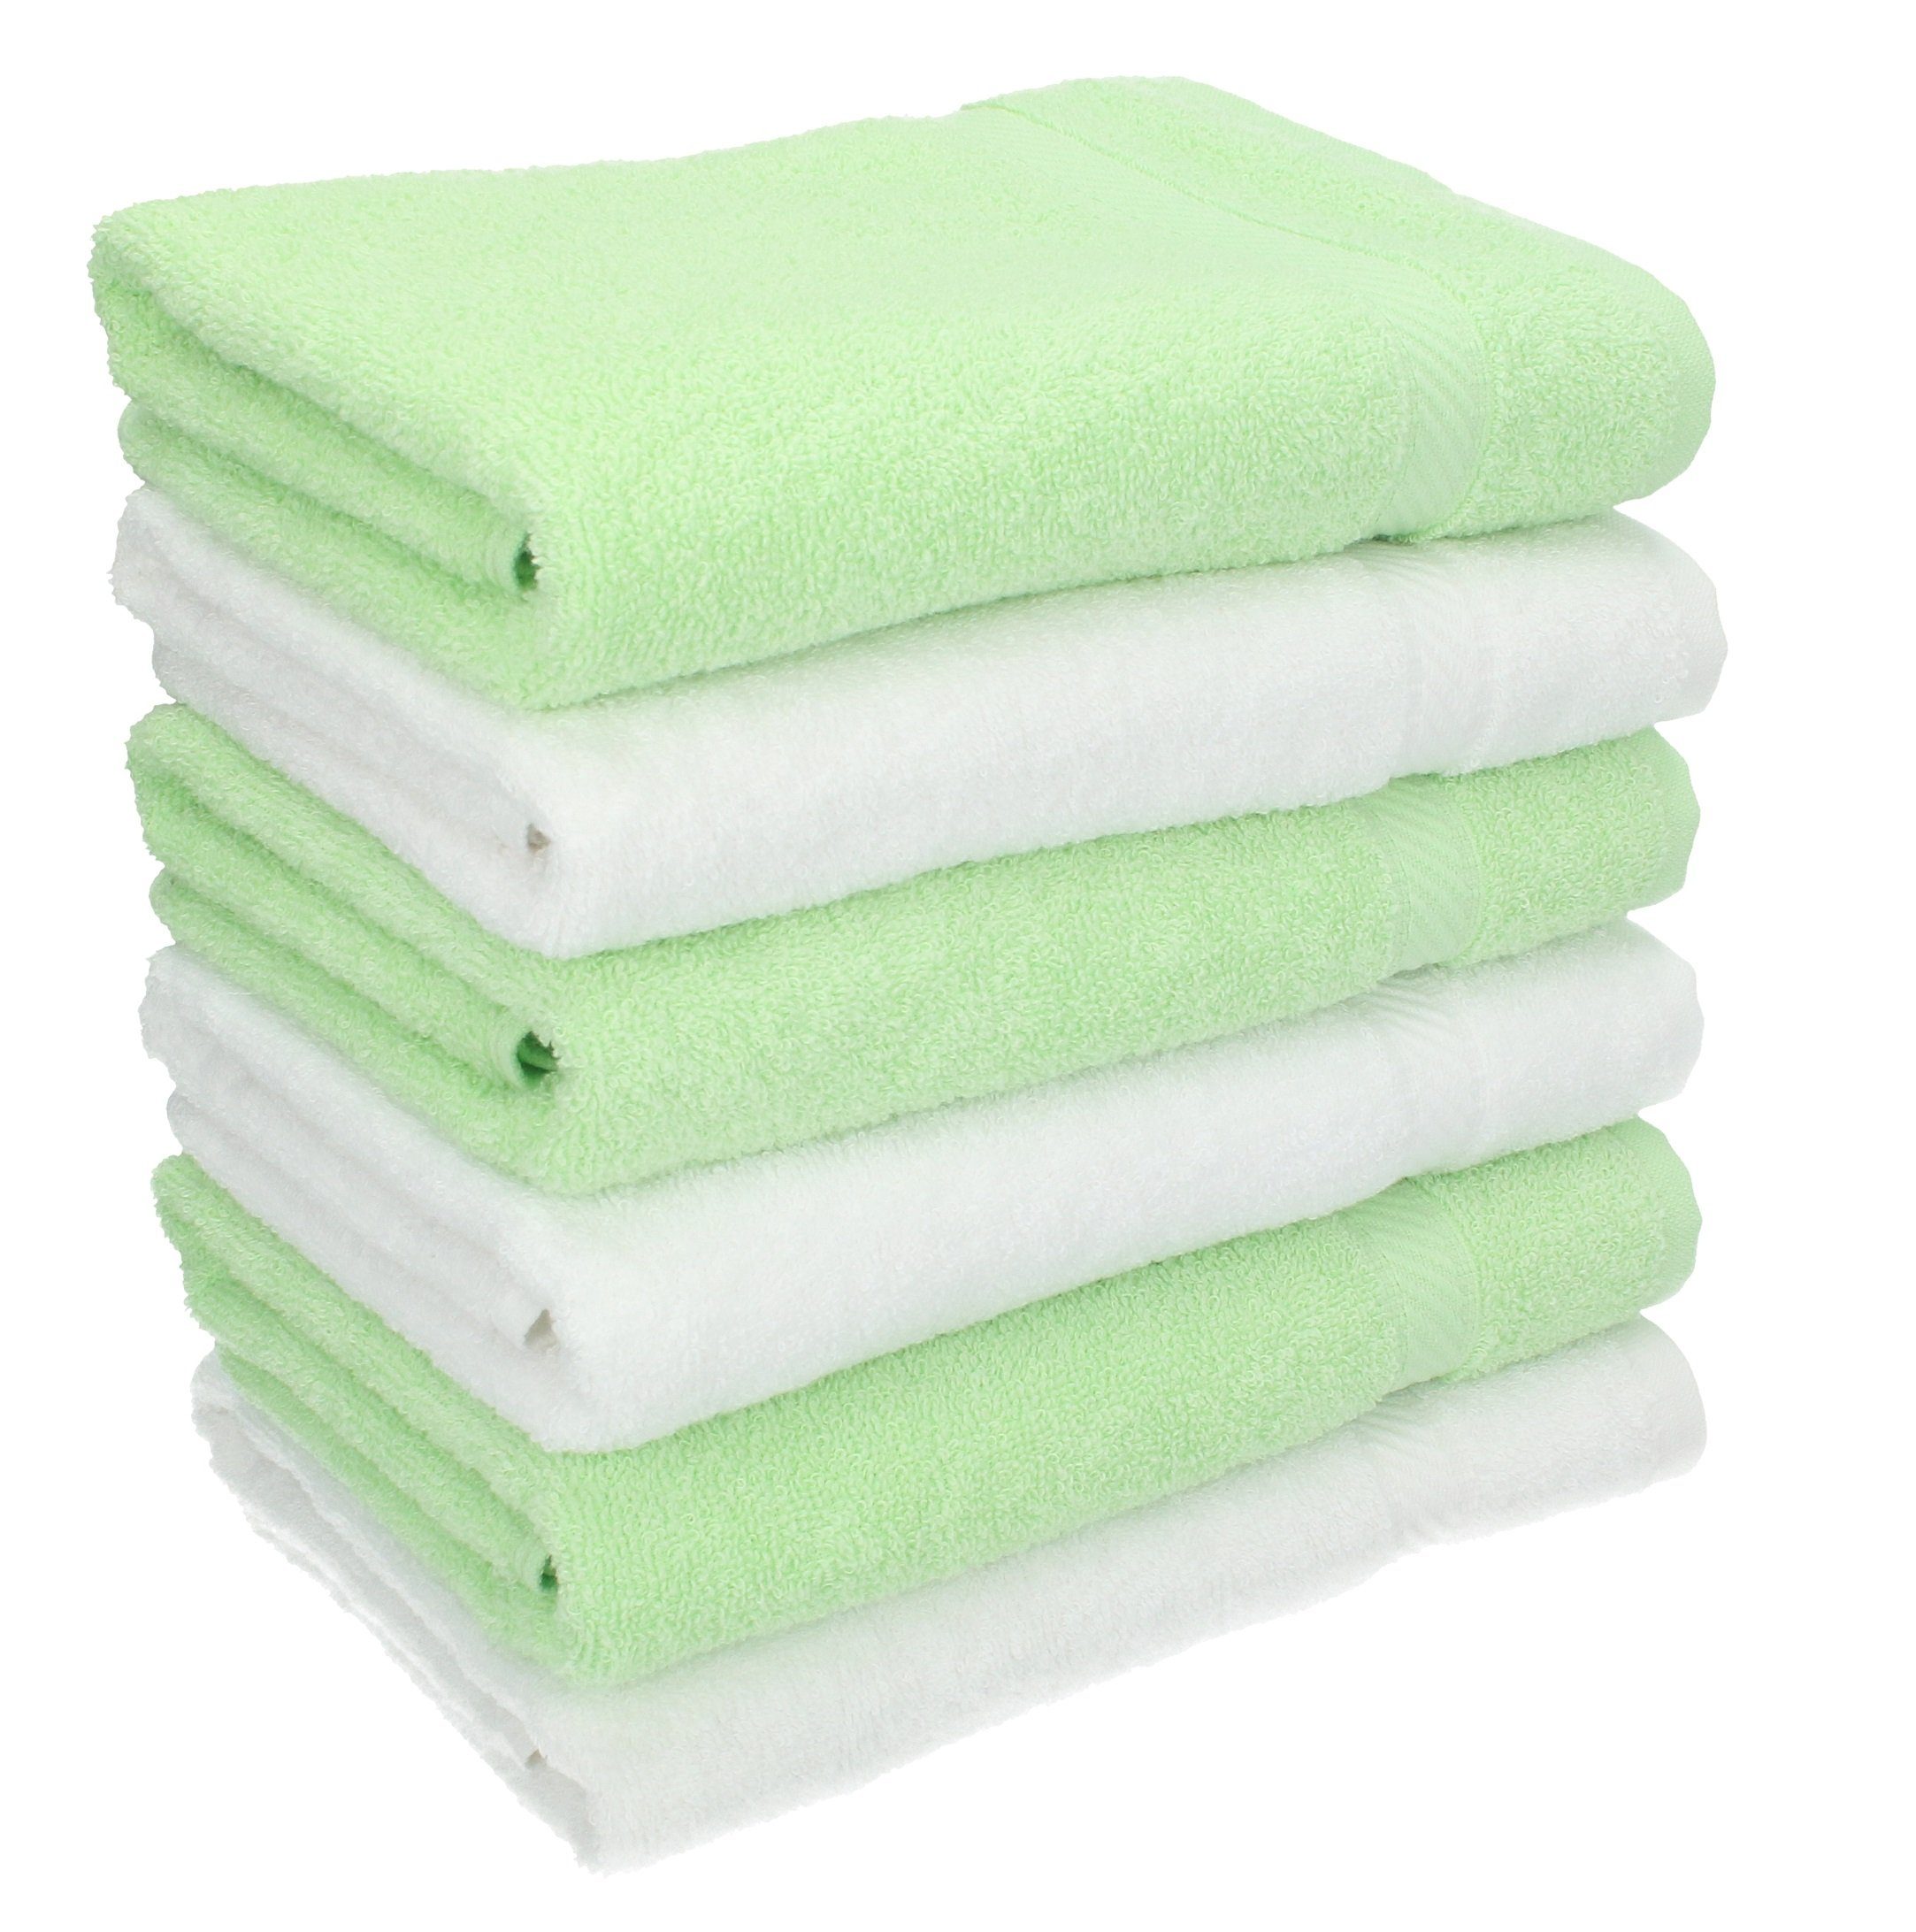 Kinder Babypflege Betz Handtücher 6 Stück Handtücher Palermo 100% Baumwolle Handtuch-Set Farbe weiß und grün